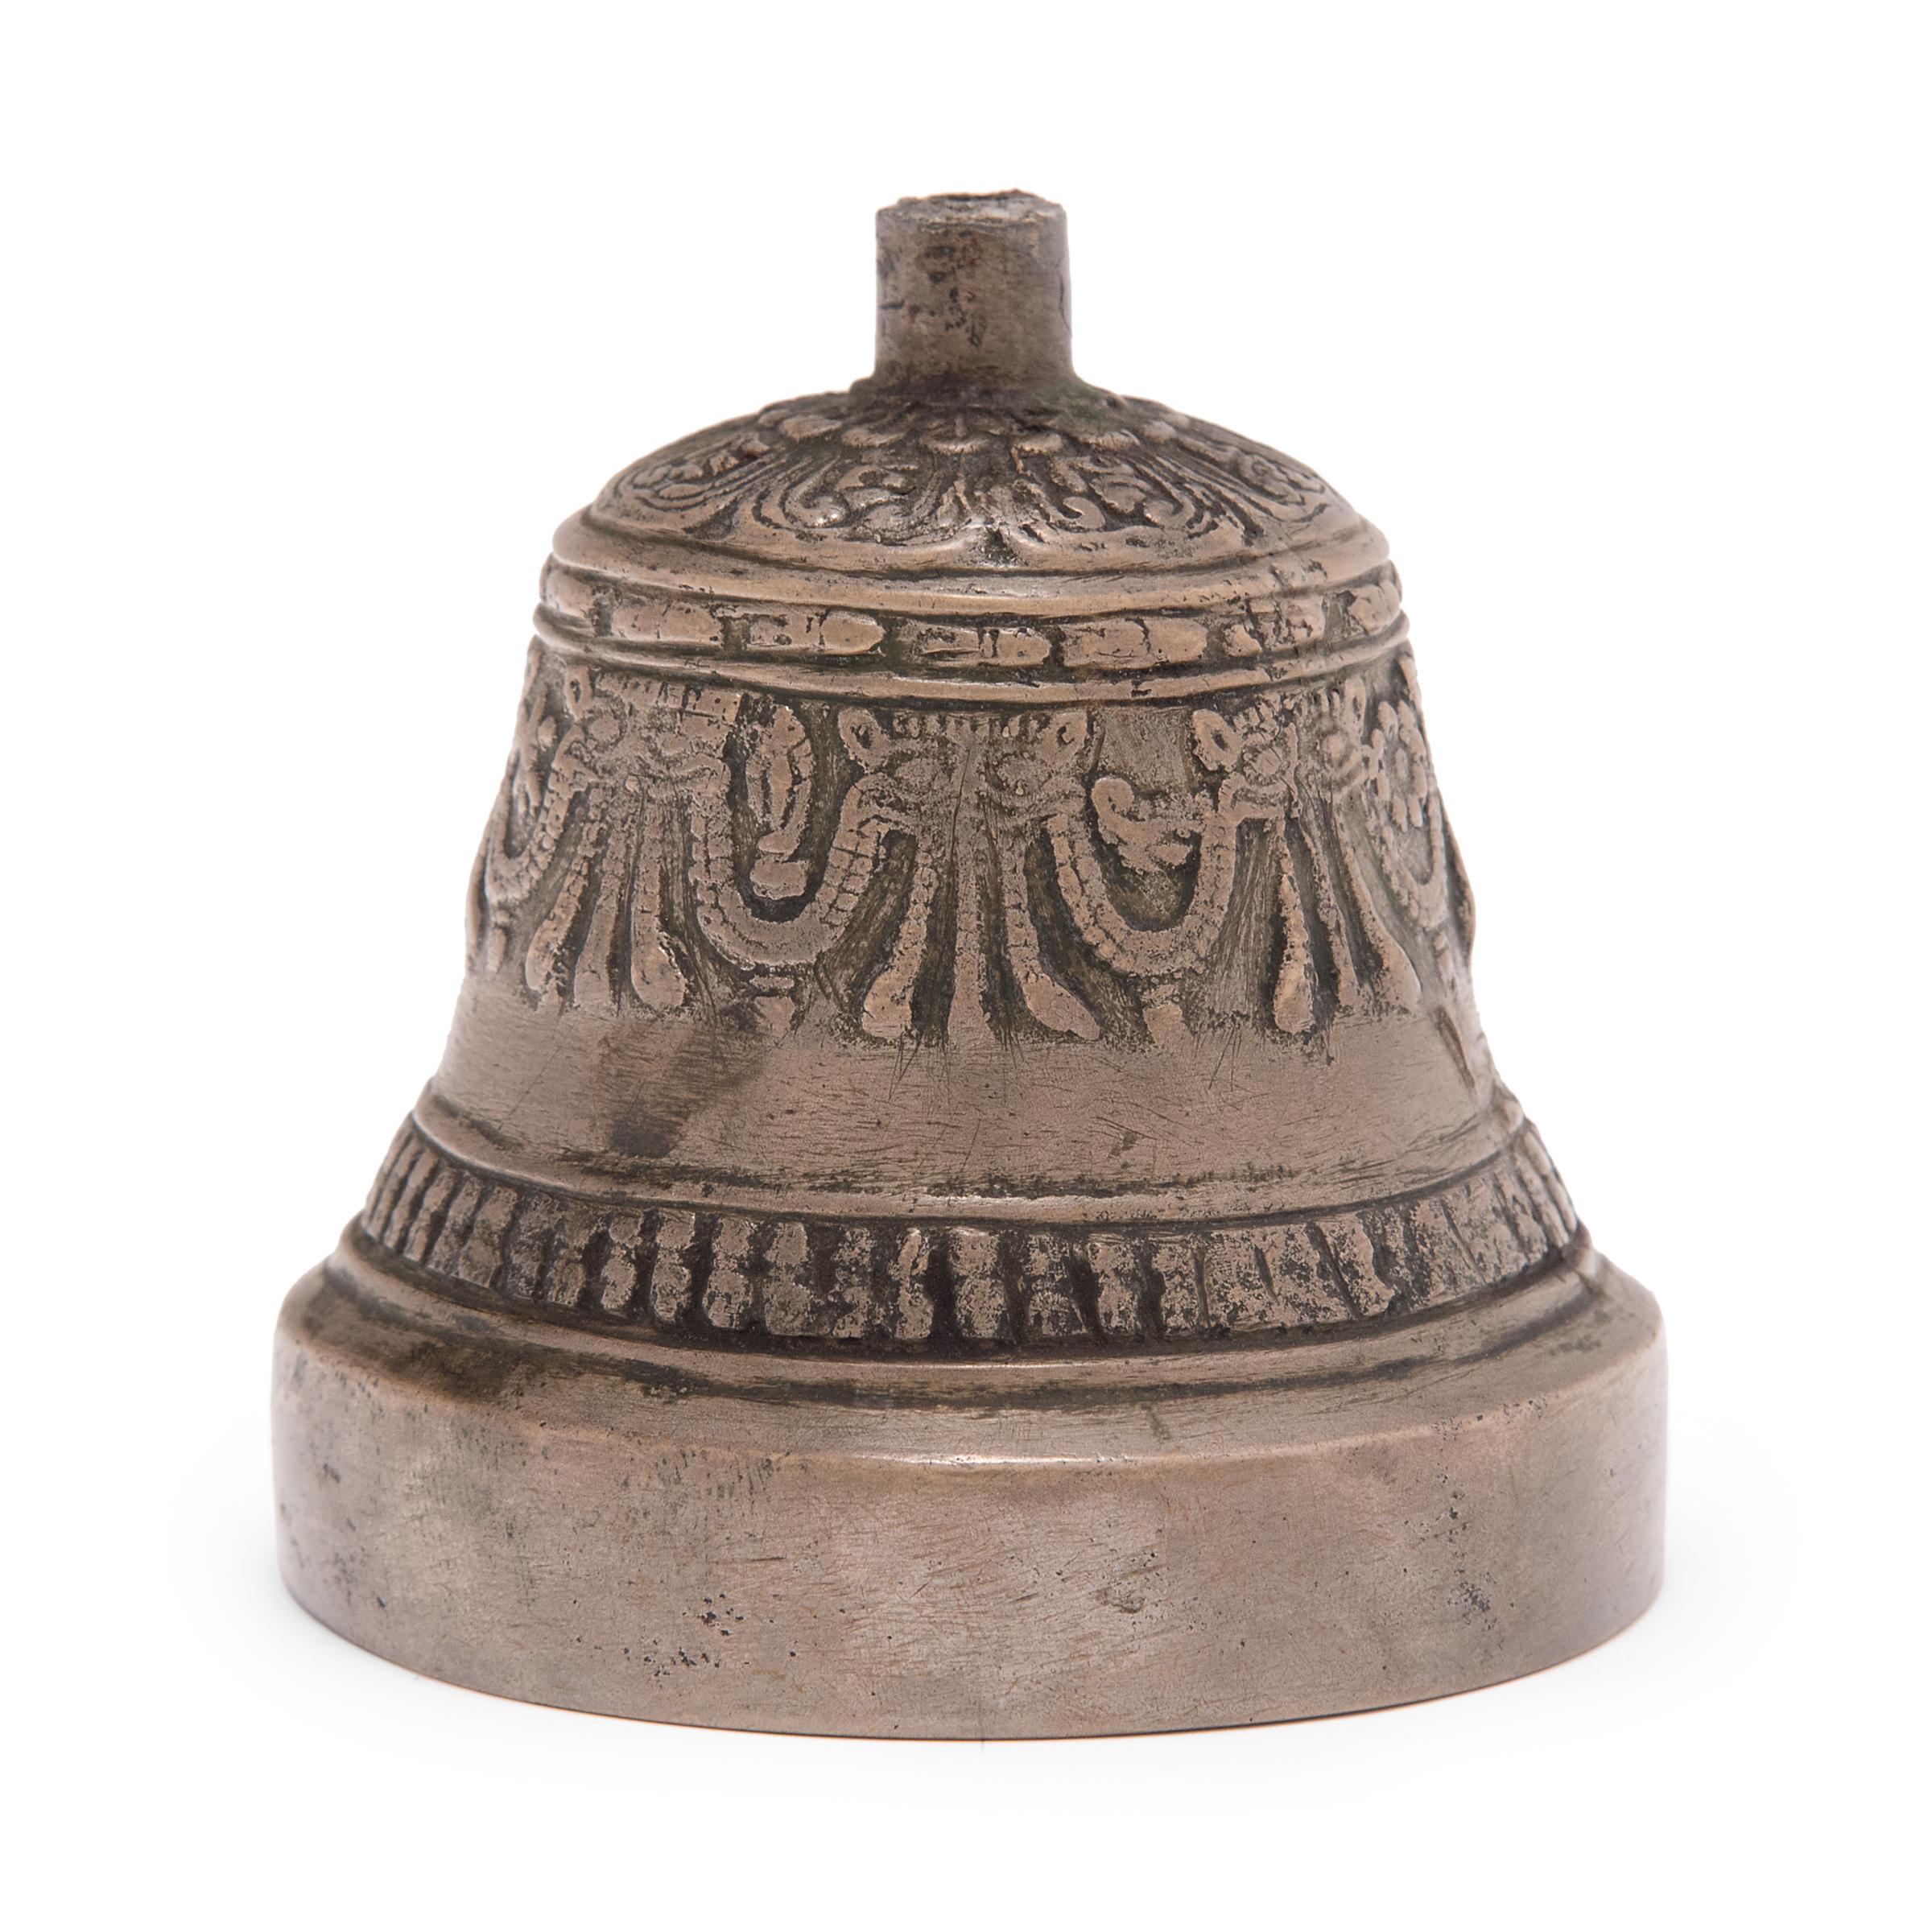 Cette petite cloche en bronze est la moitié inférieure d'une cloche de cérémonie tibétaine appelée dril-bu. Il manque ici la poignée, qui devait avoir la forme d'un sceptre de diamant ou d'un vajra, autre objet rituel symbolisant la compassion.